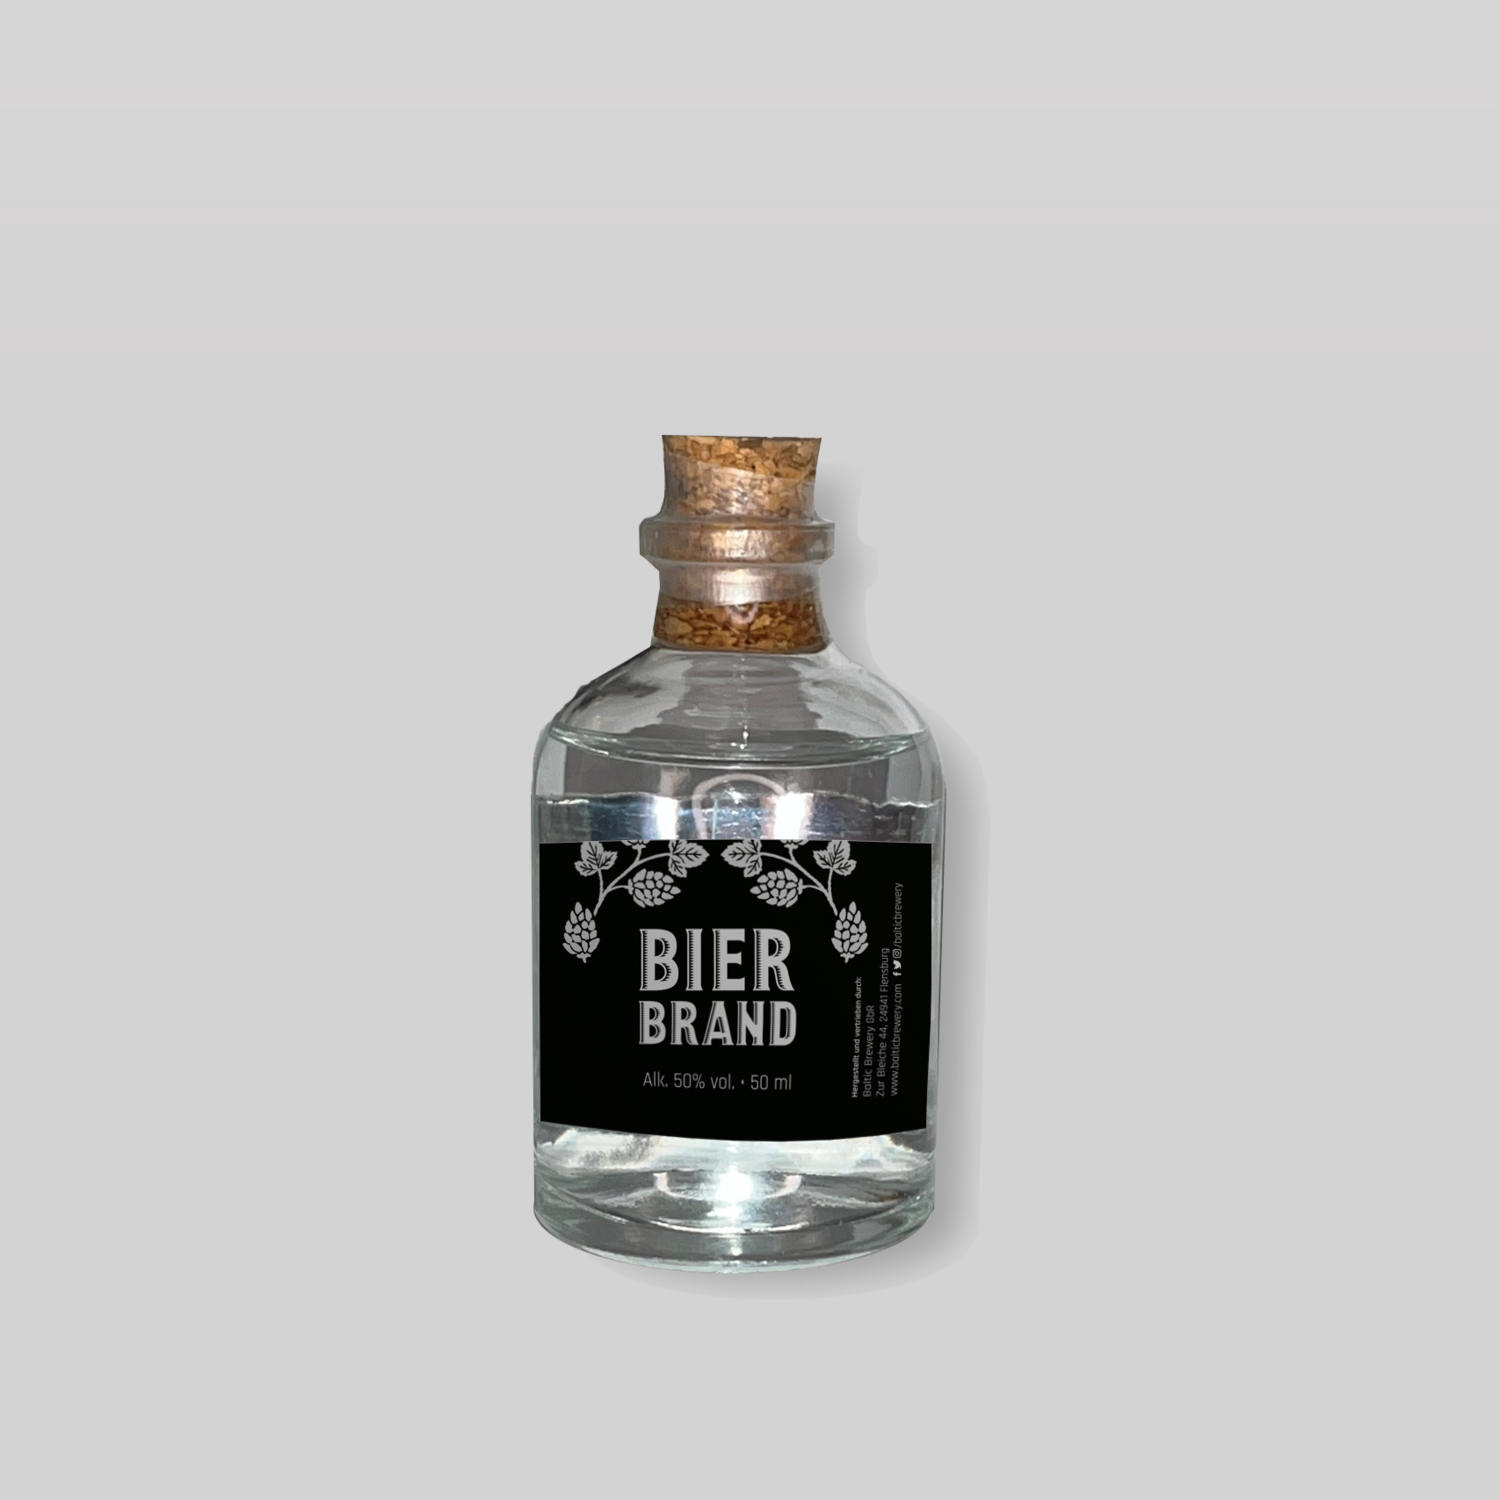 Bierbrand - 50 ml